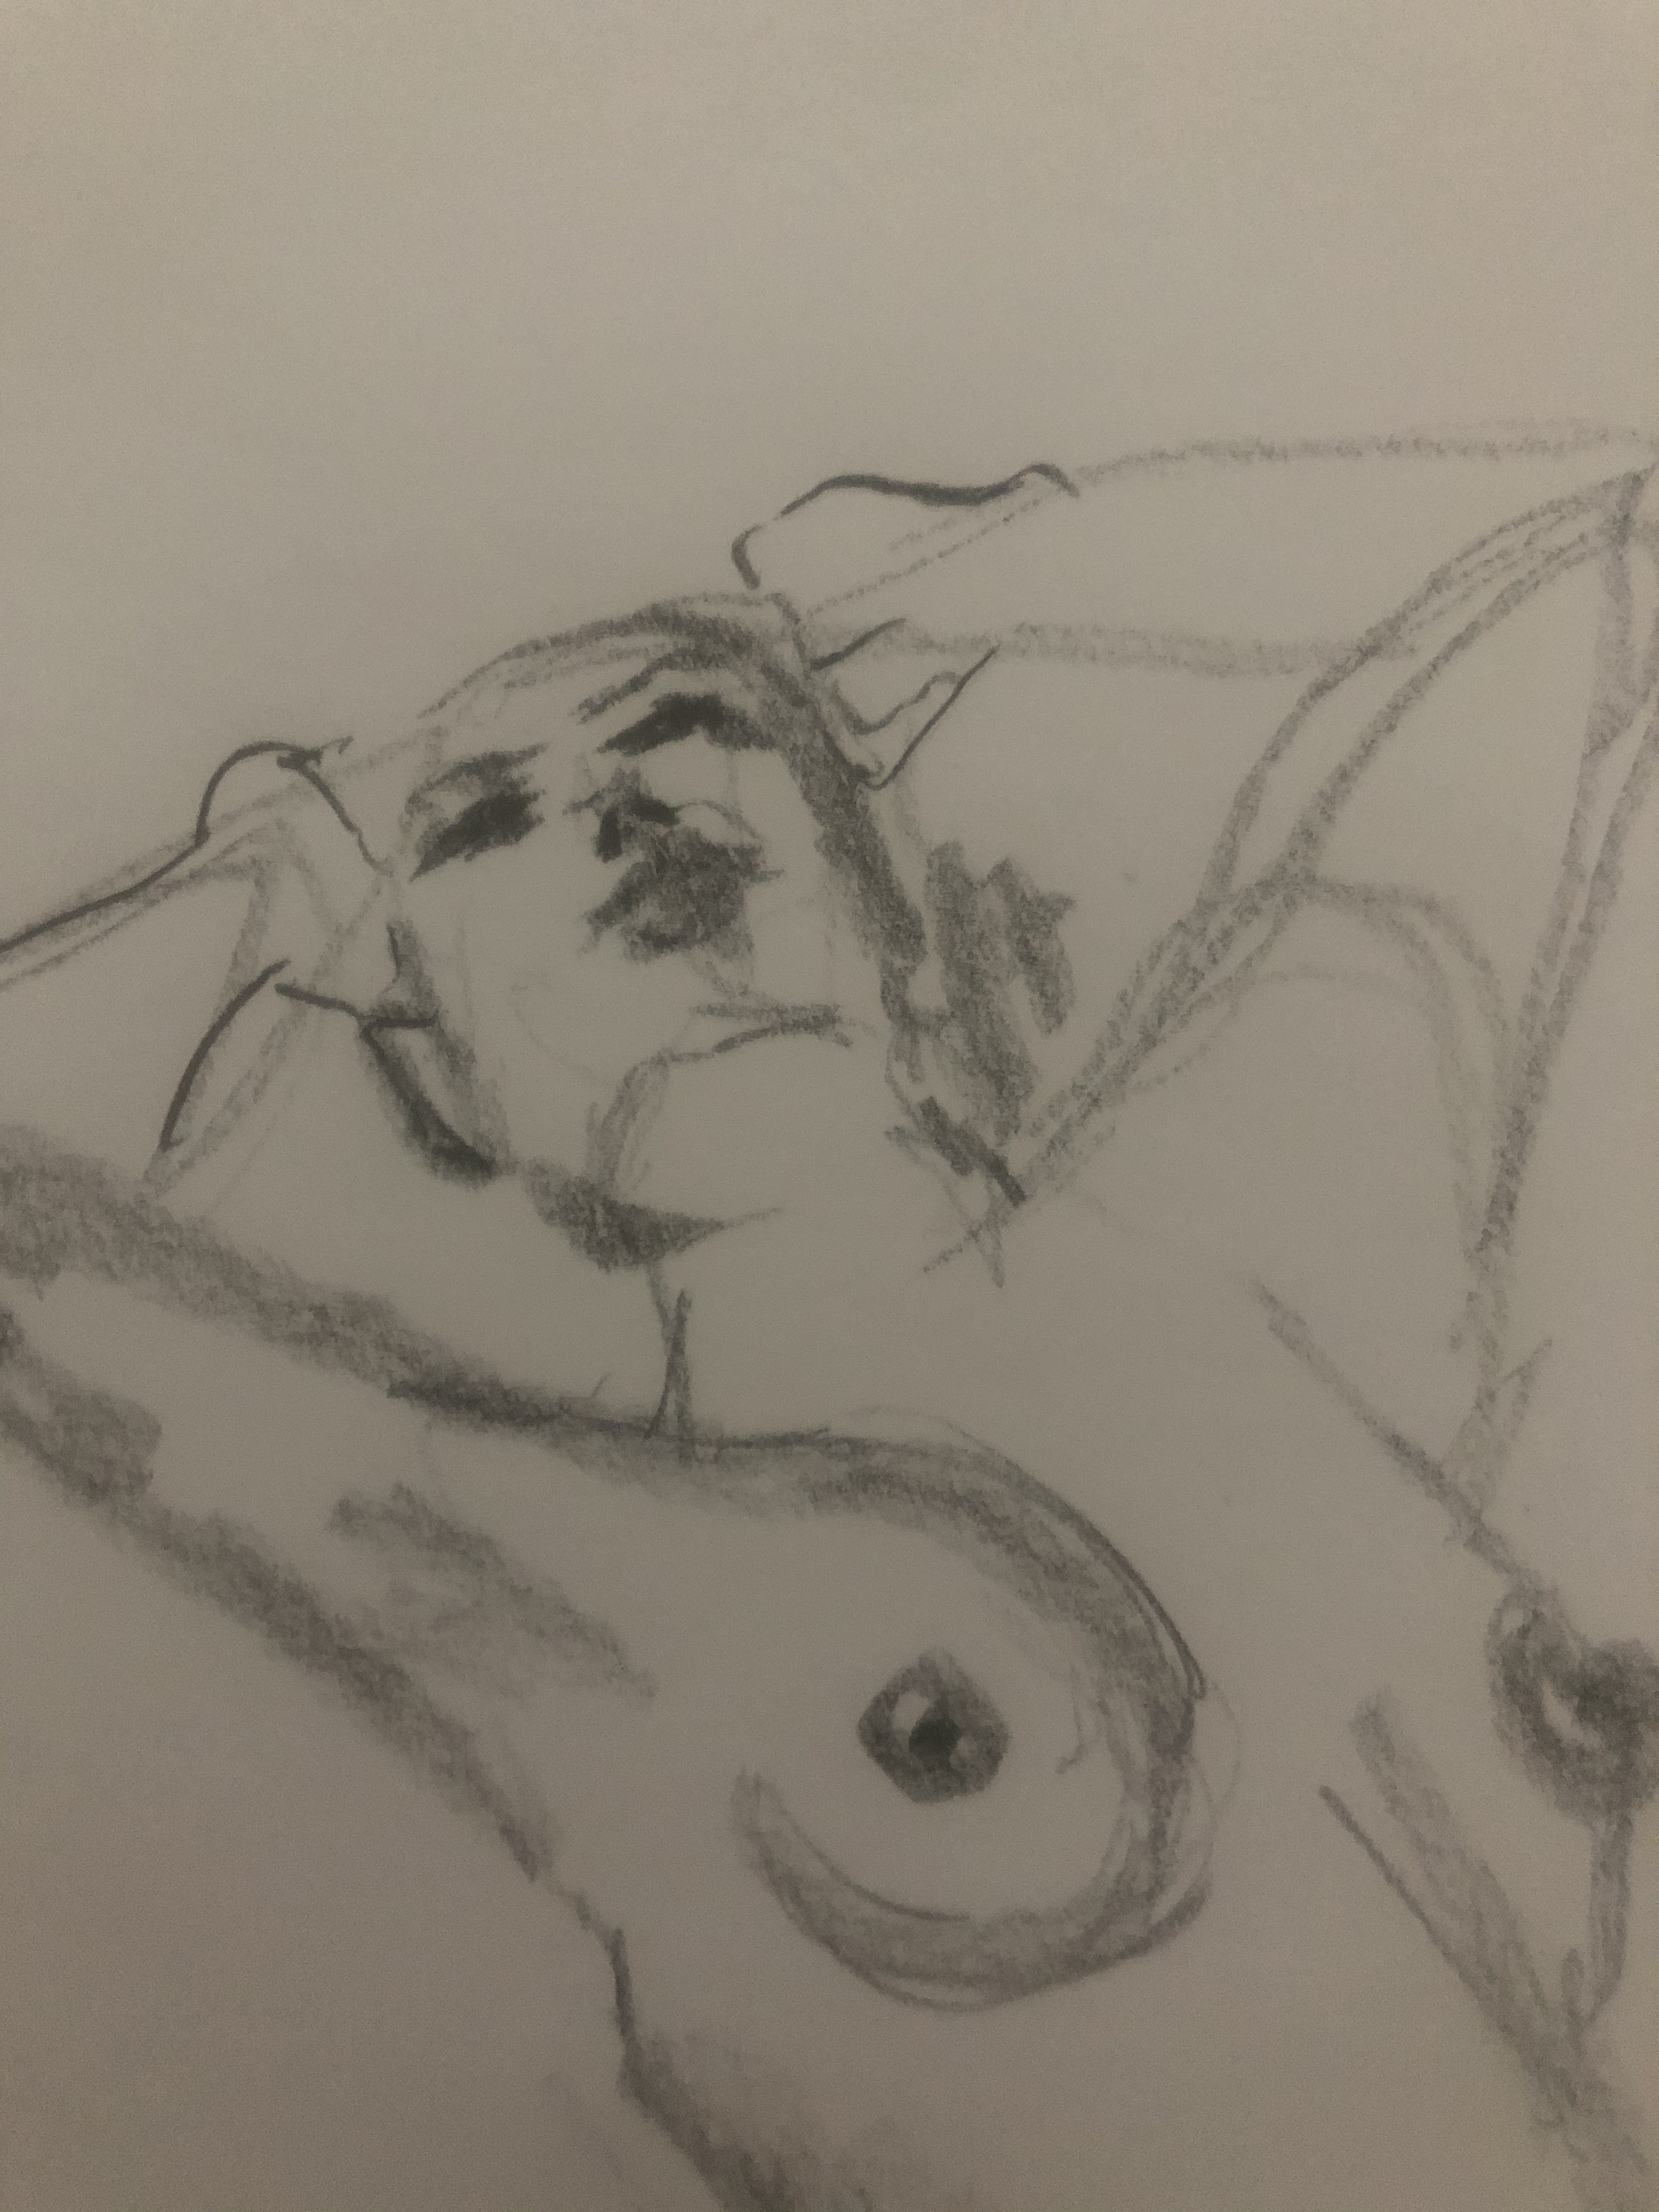  Portrait femme raccourci contre-plongÃ©es fusain sur papier  cours de dessin 